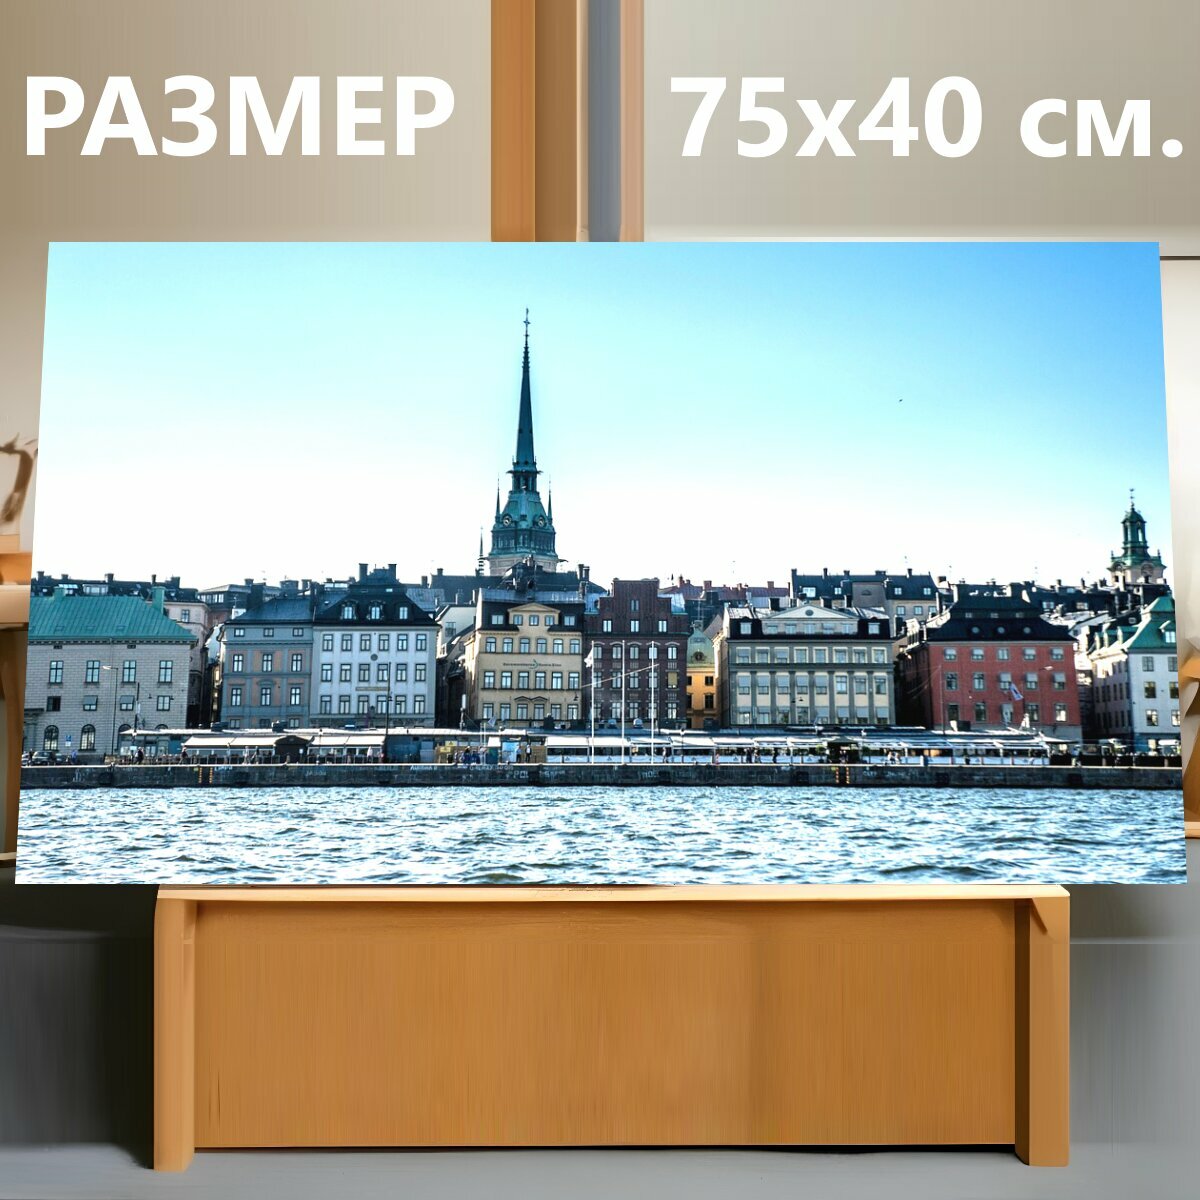 Картина на холсте "Стокгольм, швеция, город" на подрамнике 75х40 см. для интерьера